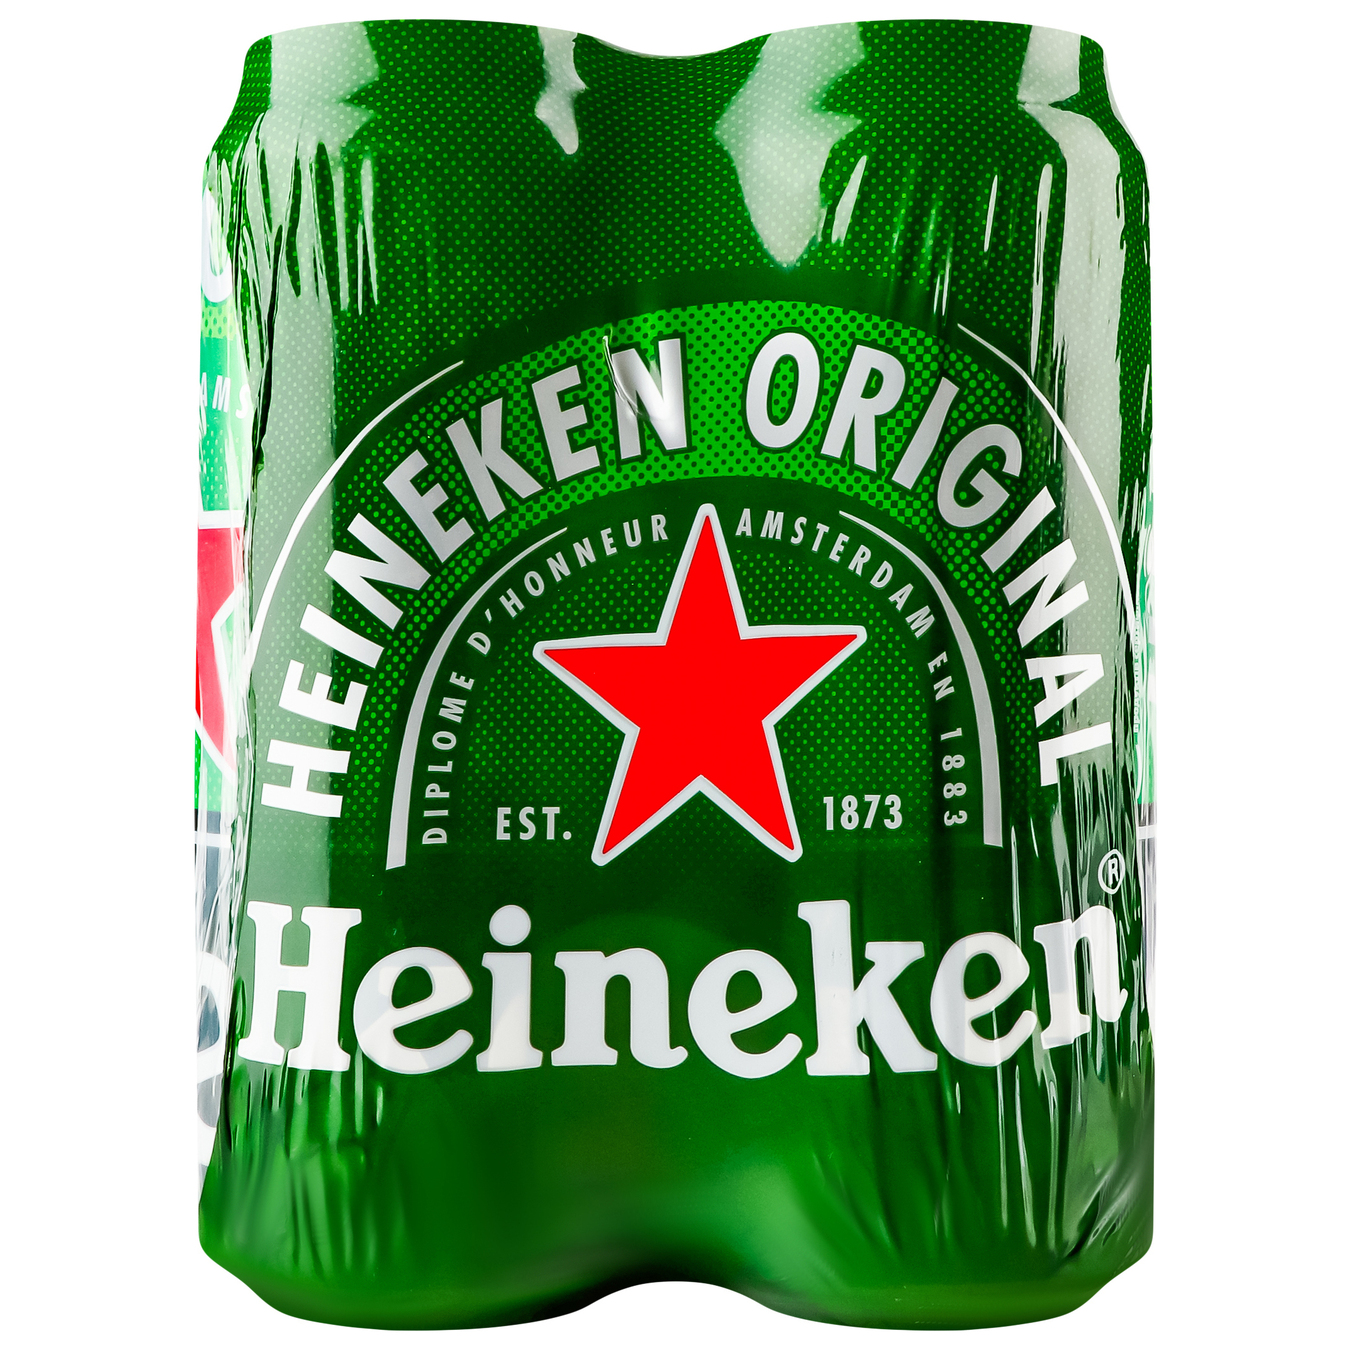 Пиво Heineken светлое фильтрованное пастеризованное 5% 4*500мл/уп 2